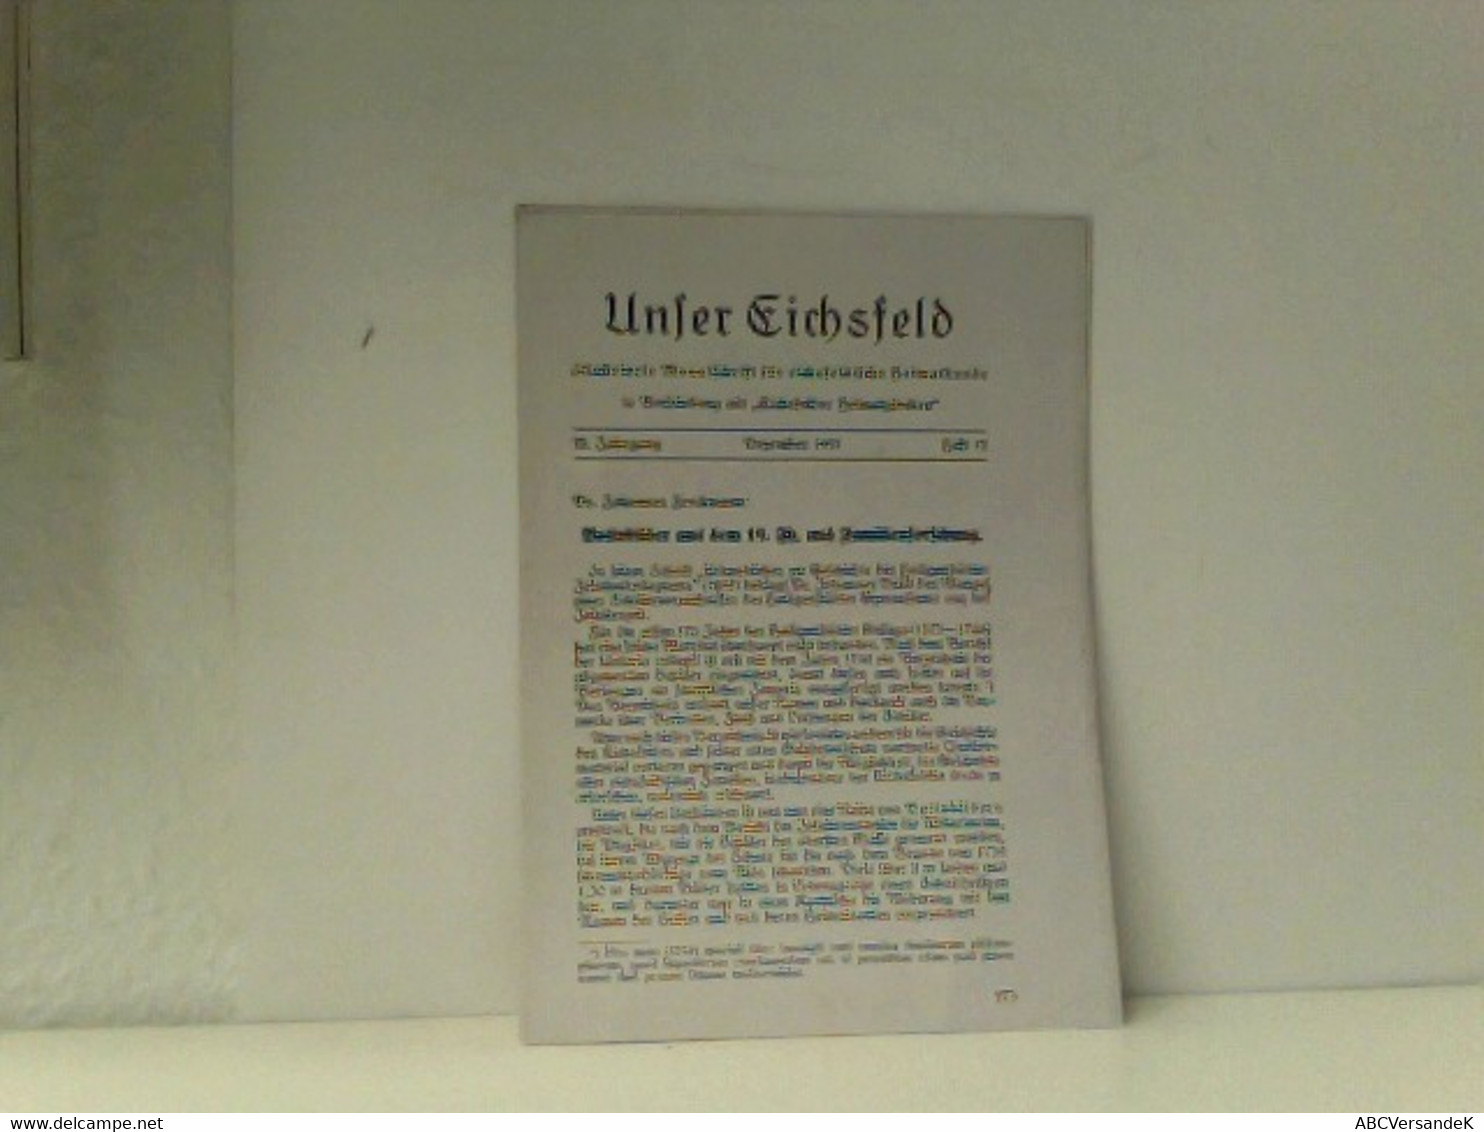 Unser Eichsfeld: KOPIE!!! Heft 12 Dezember 1937 (Seiten 273 - 277) - Deutschland Gesamt